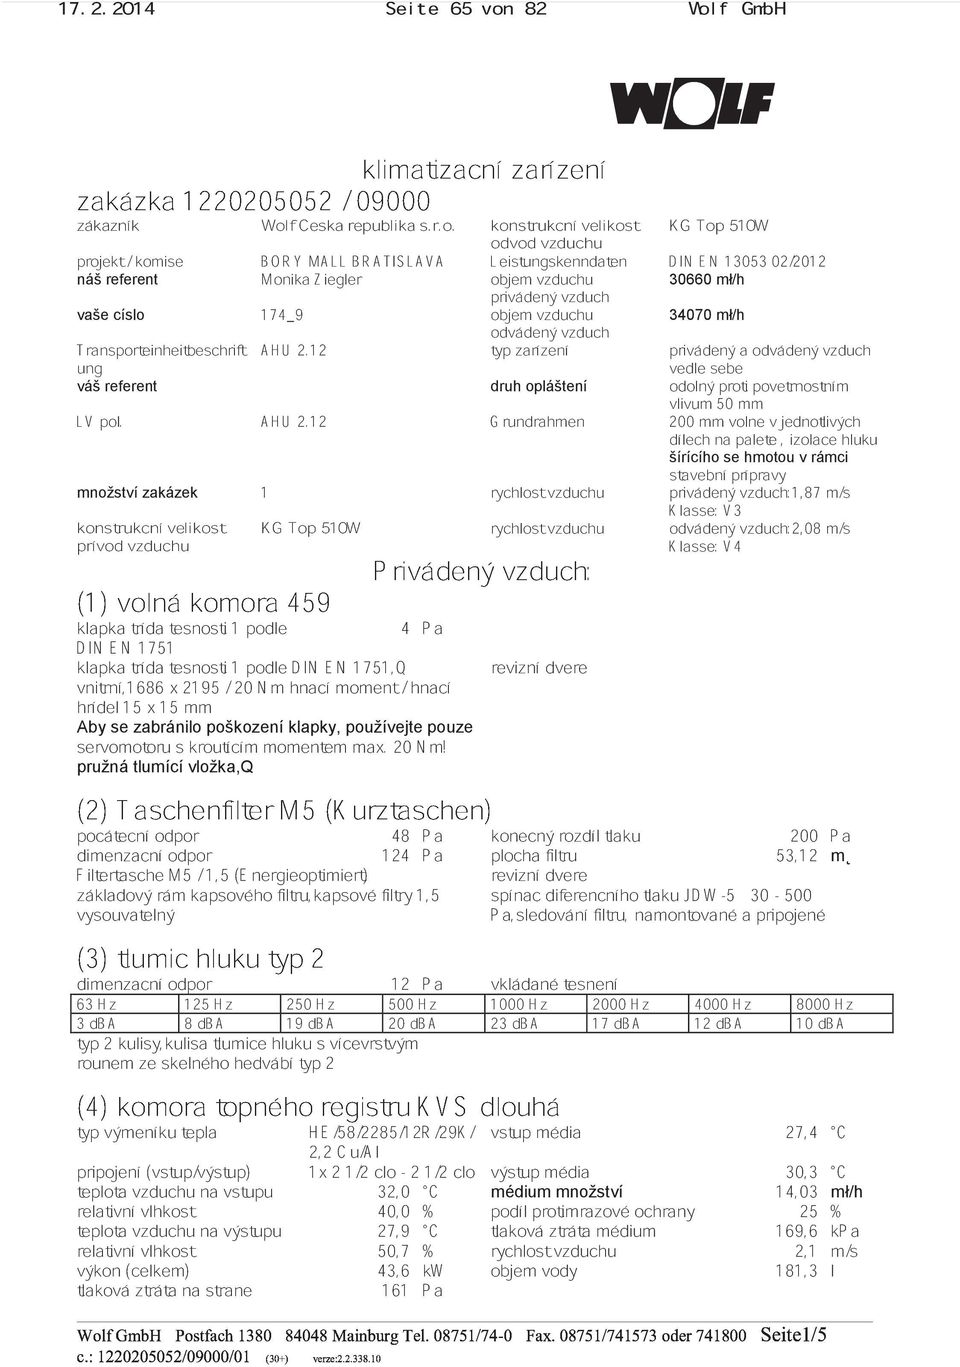 f GmbH zakázka 1220205052 / 09000 klimatizacní zarízení zákazník Wol